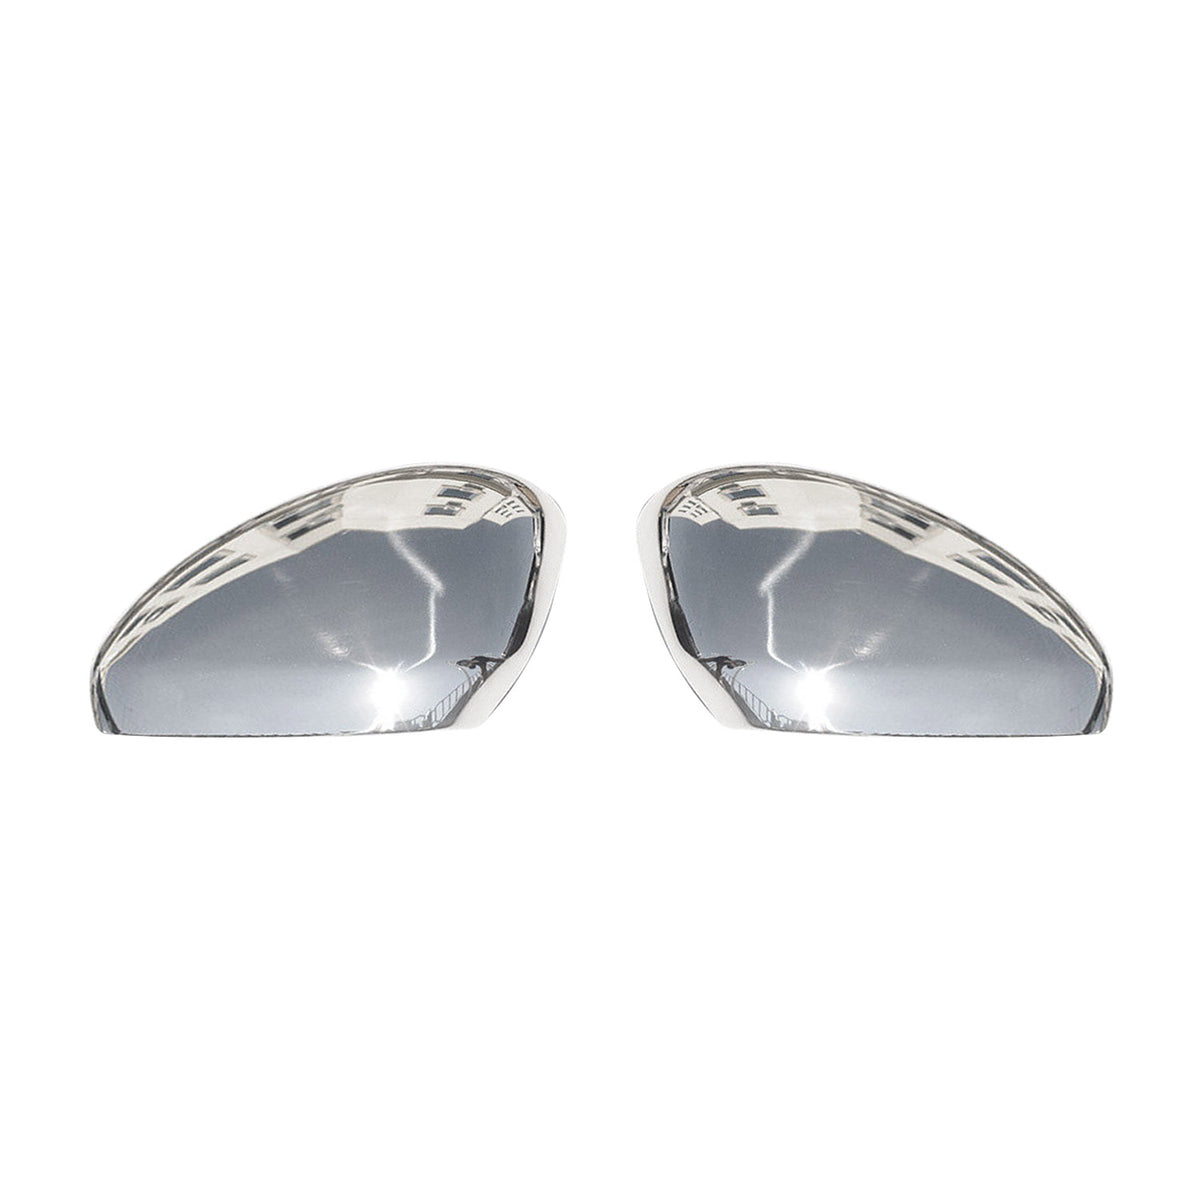 Für Peugeot RCZ 2010-2015 Spiegelabdeckung Spiegelkappen Edelstahl Schutz Chrom